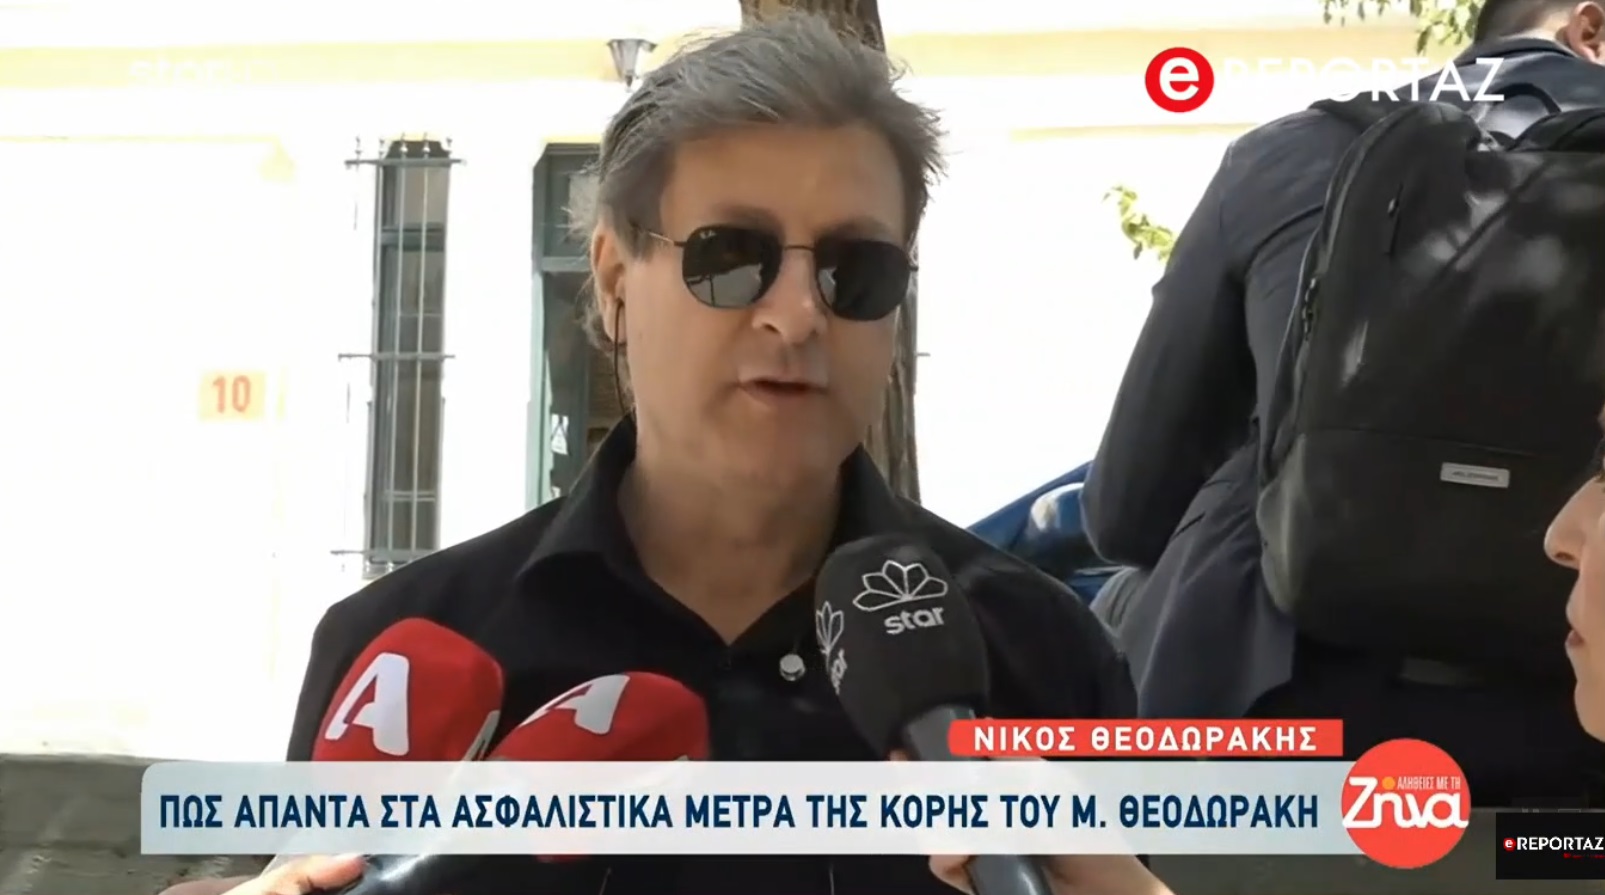 Μαργαρίτα Θεοδωράκη: Ασφαλιστικά μέτρα κατά του Νίκου Θεοδωράκη - "Είμαι γιος του Μίκη ,θα φανεί στο τεστ DNA που θα κάνω" λέει ο ίδιος (βίντεο)